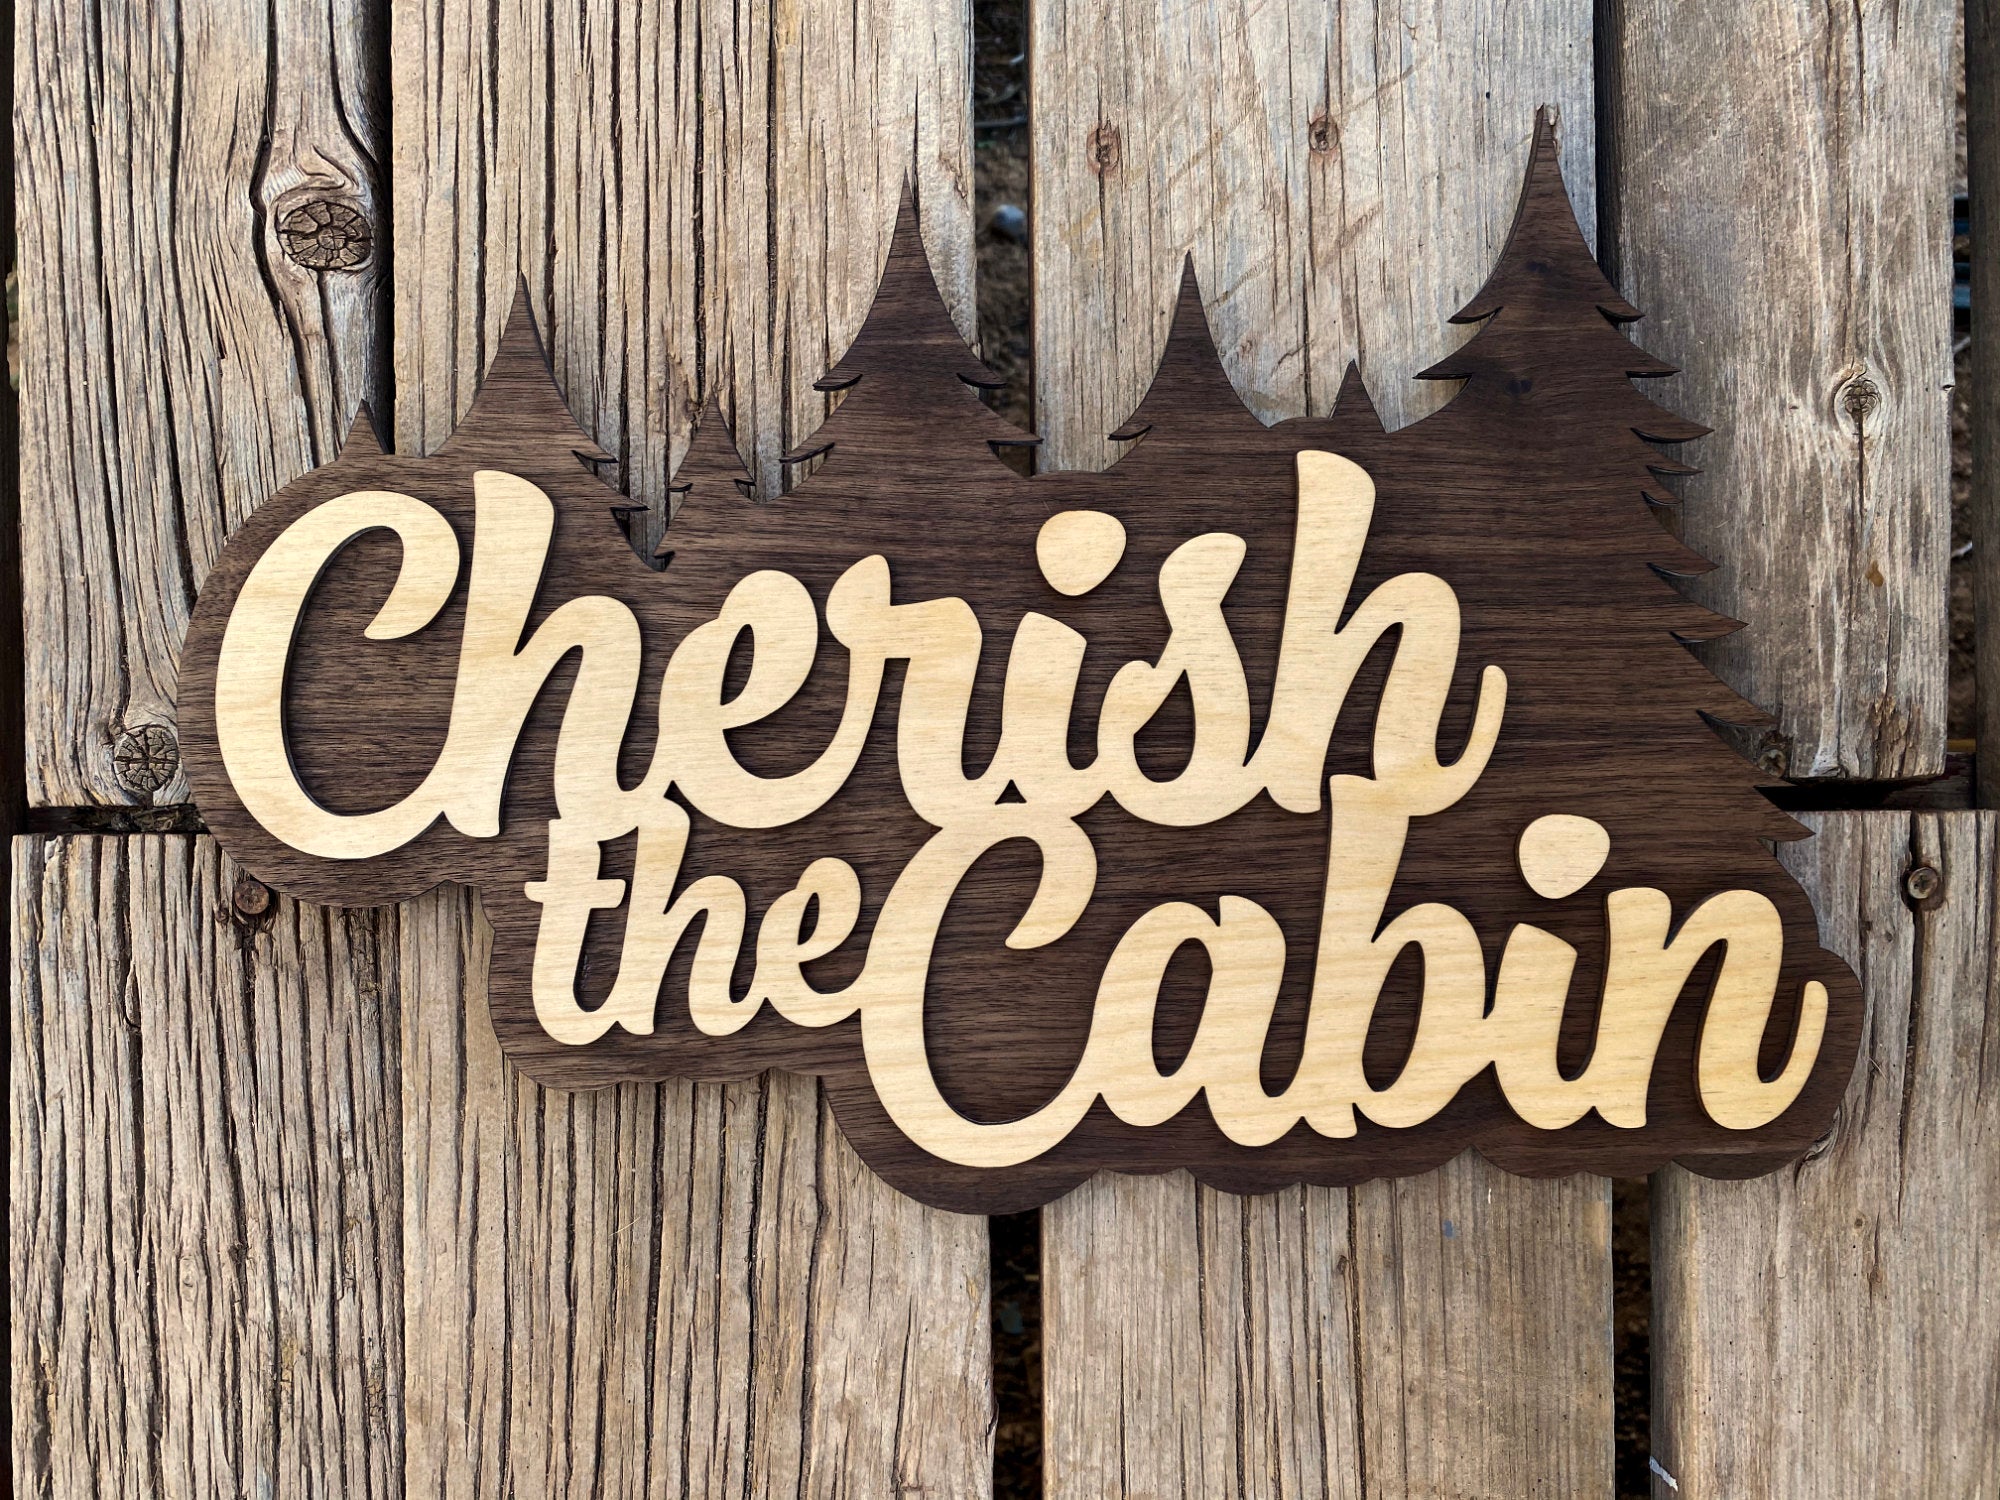 Cherish the Cabin